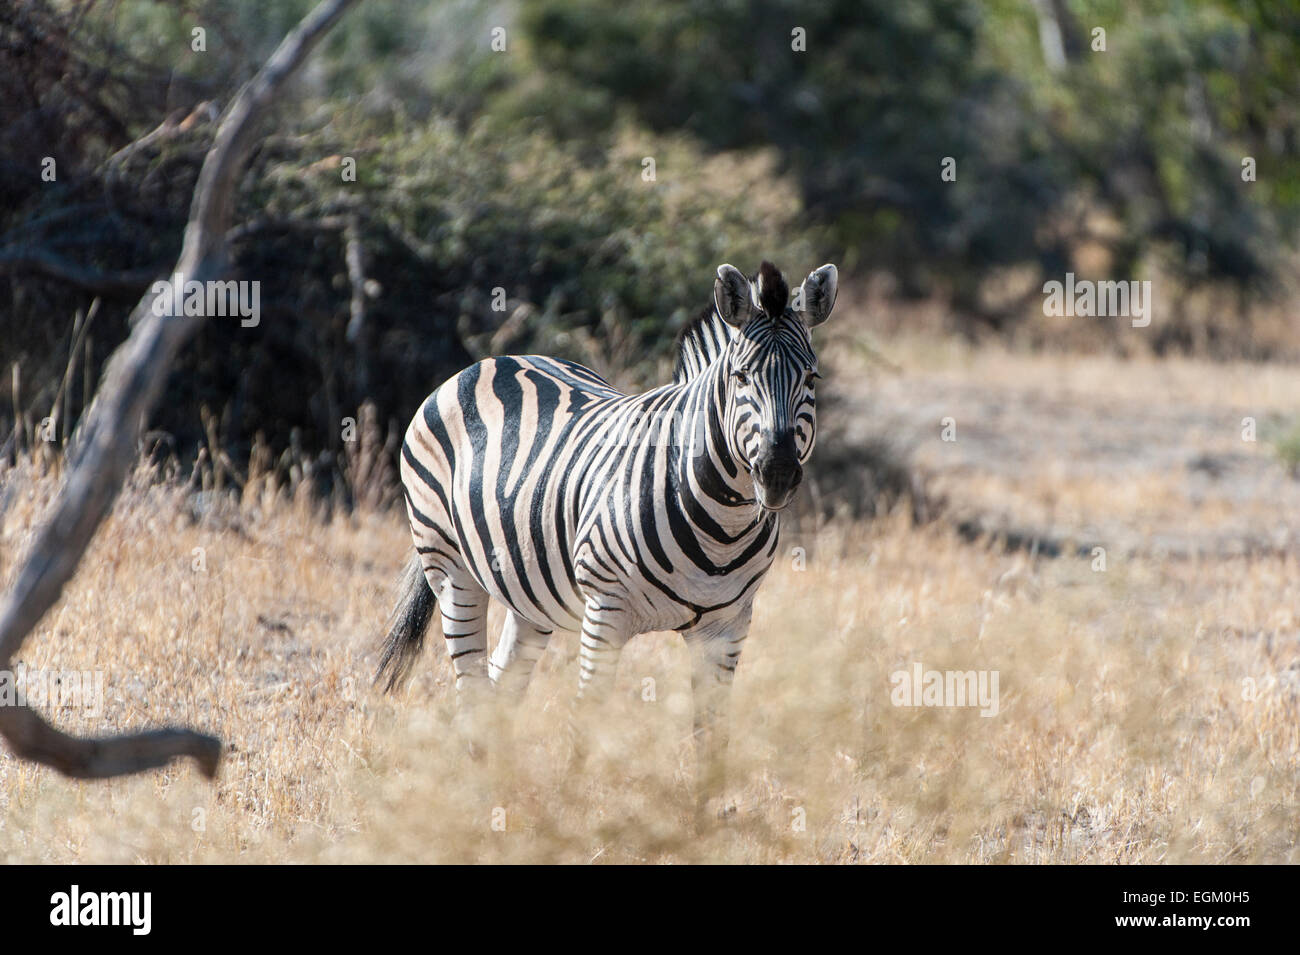 Zebra standing in grass, Botswana Stock Photo